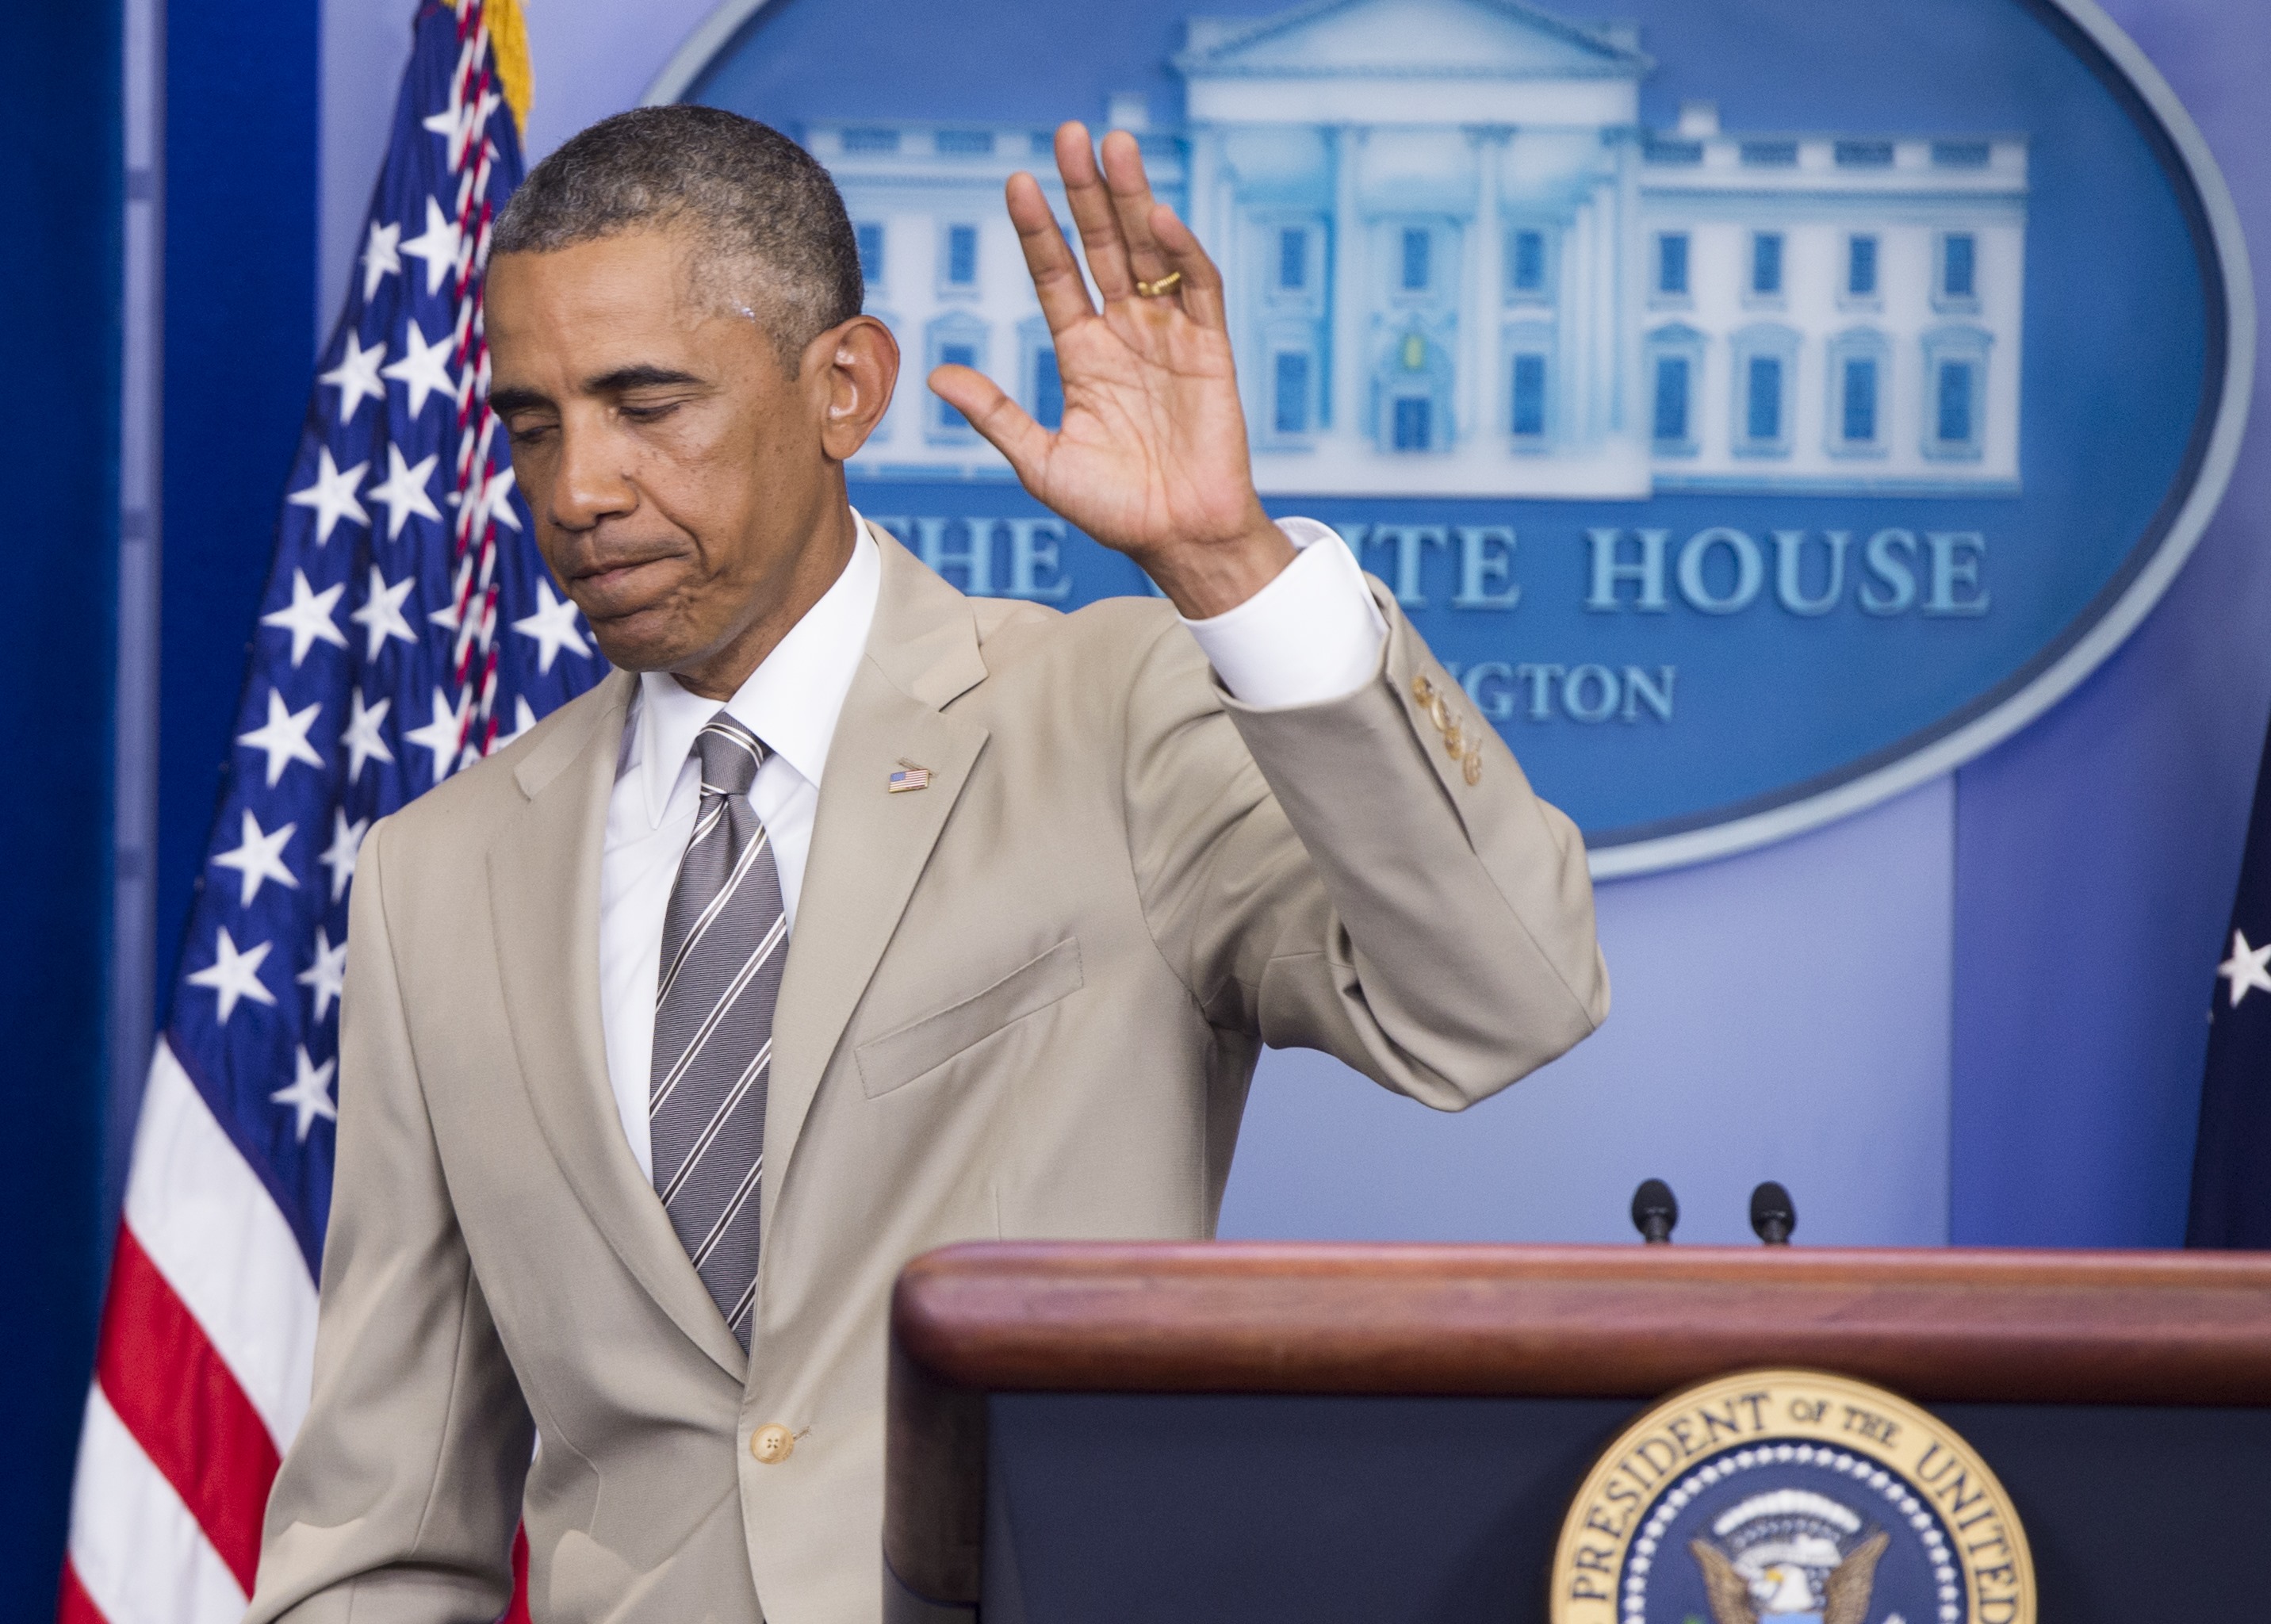 Obama levanta polémicas por utilizar el beige en un traje tras las vacaciones